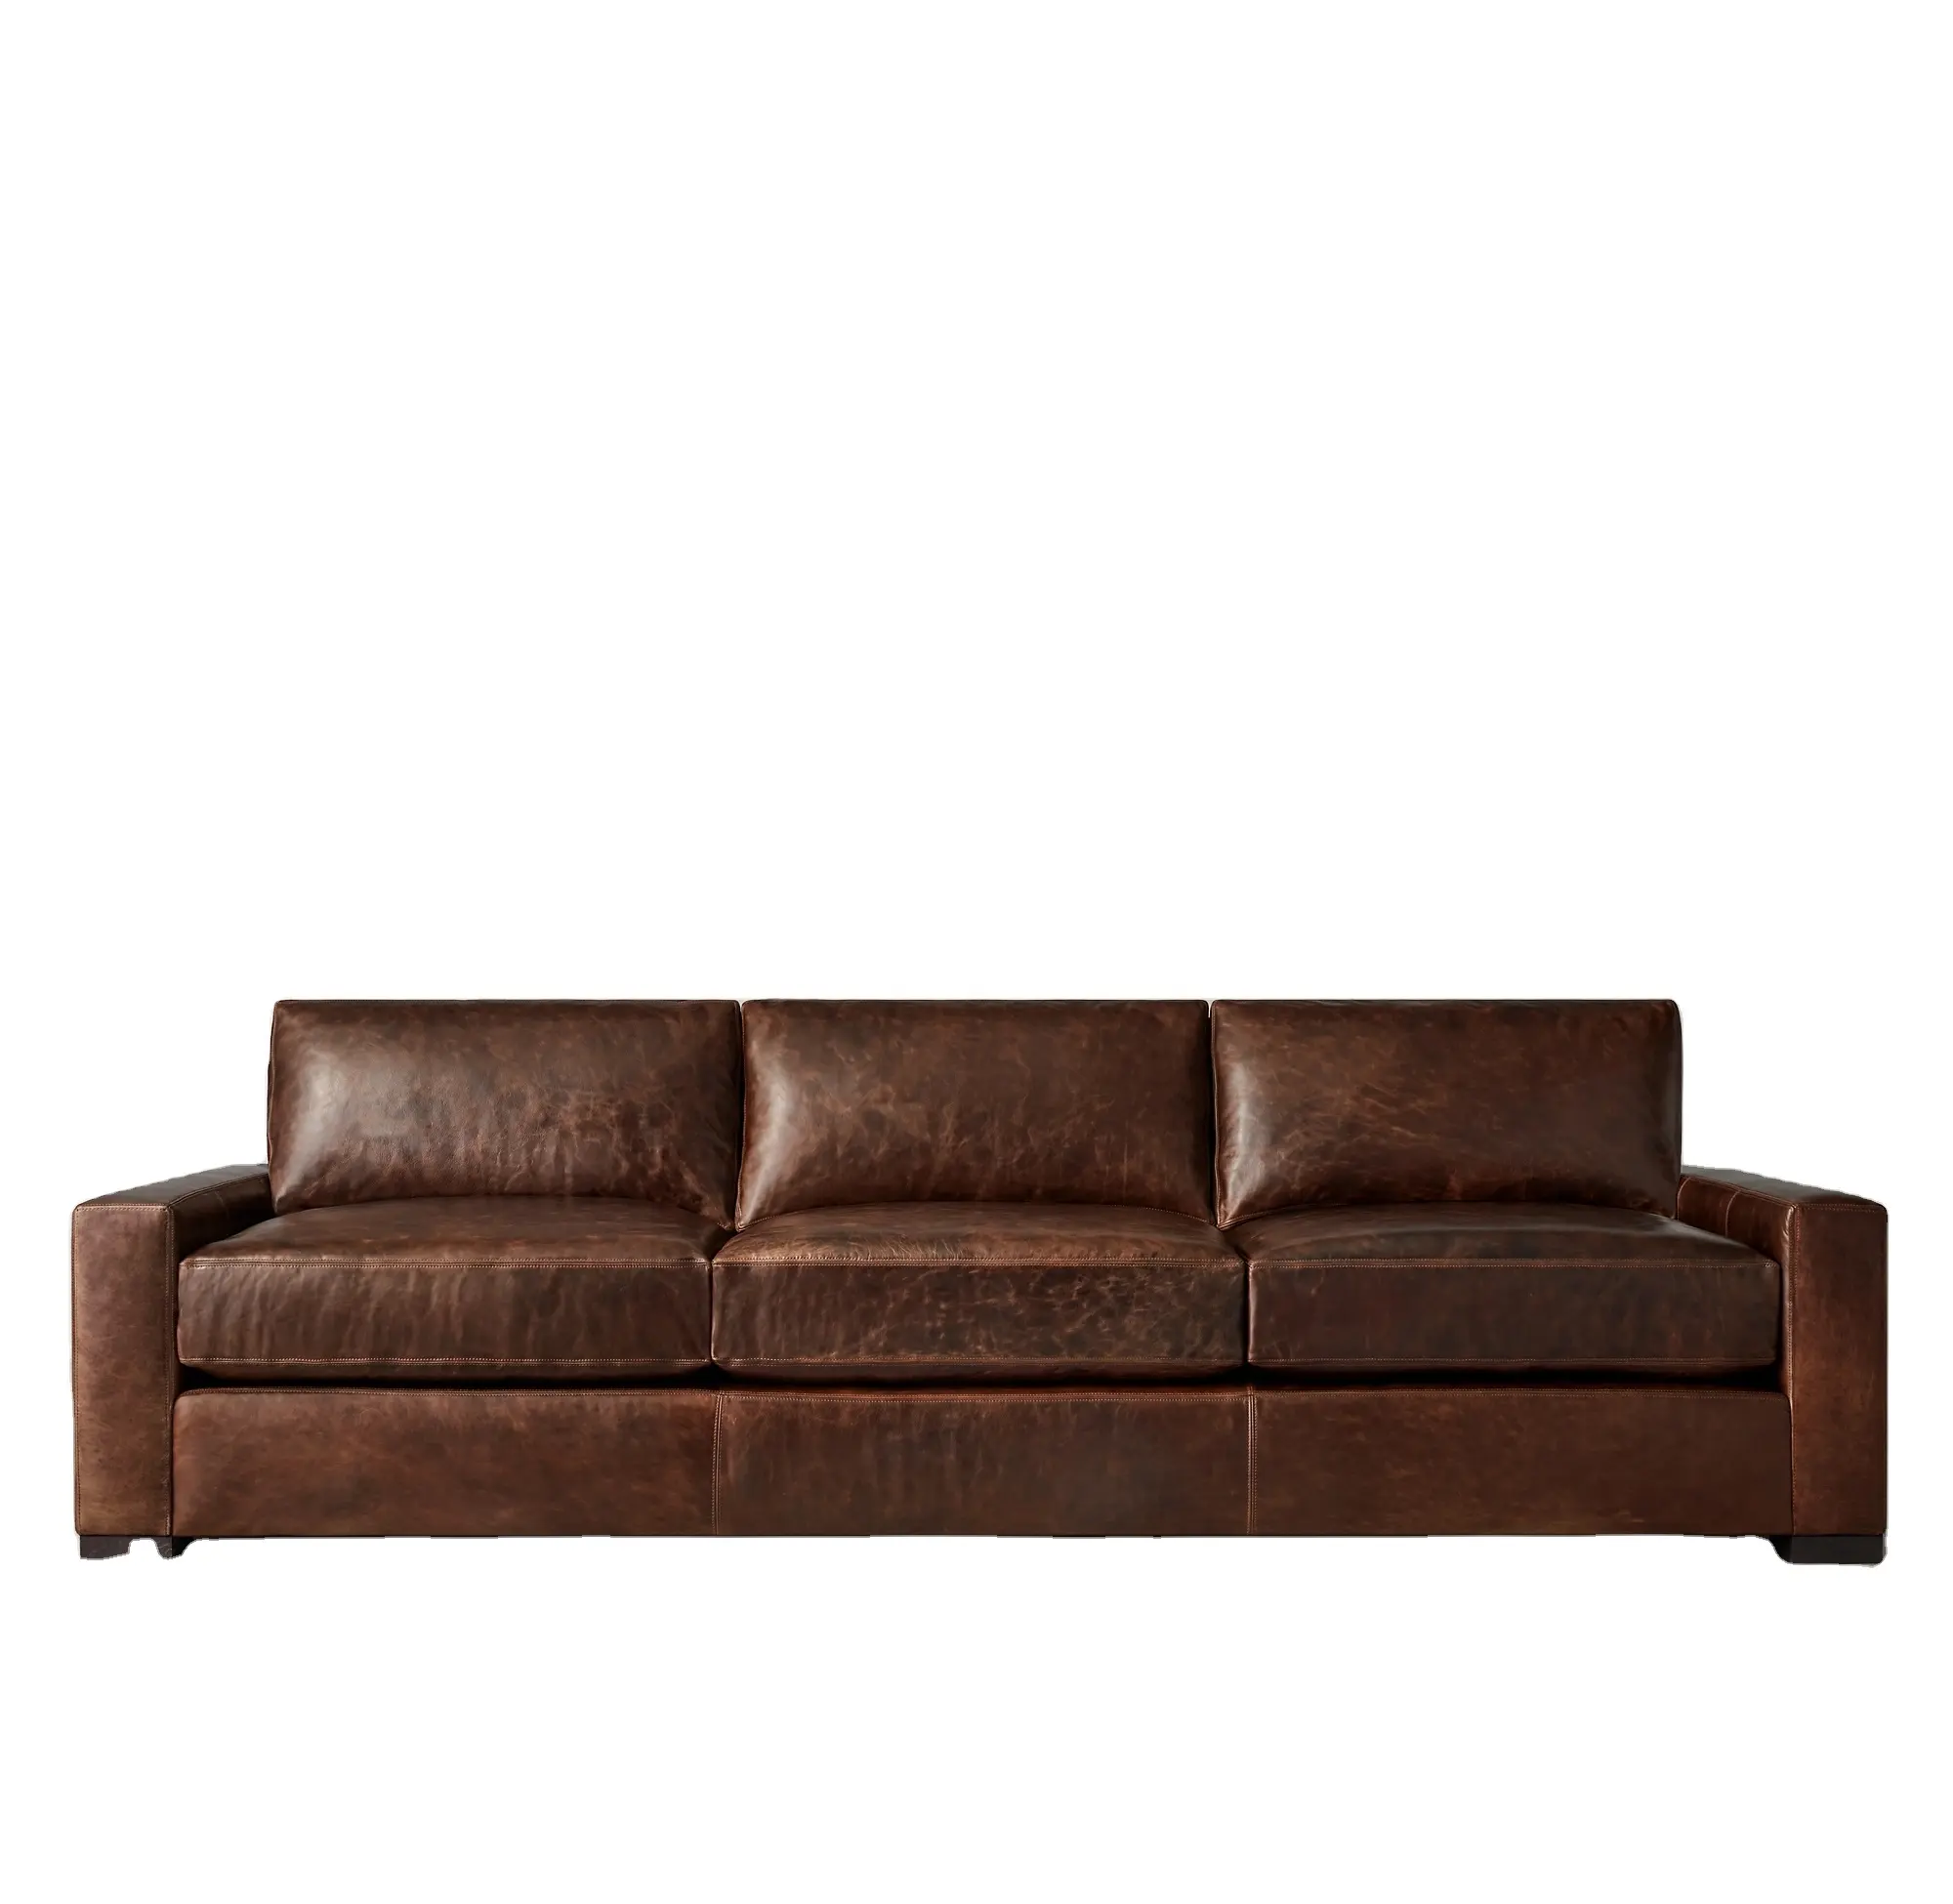 Mobiliário americano simples para sala de estar, sofá moderno, hotel, villa, clube, móveis personalizados, vendas diretas da fábrica